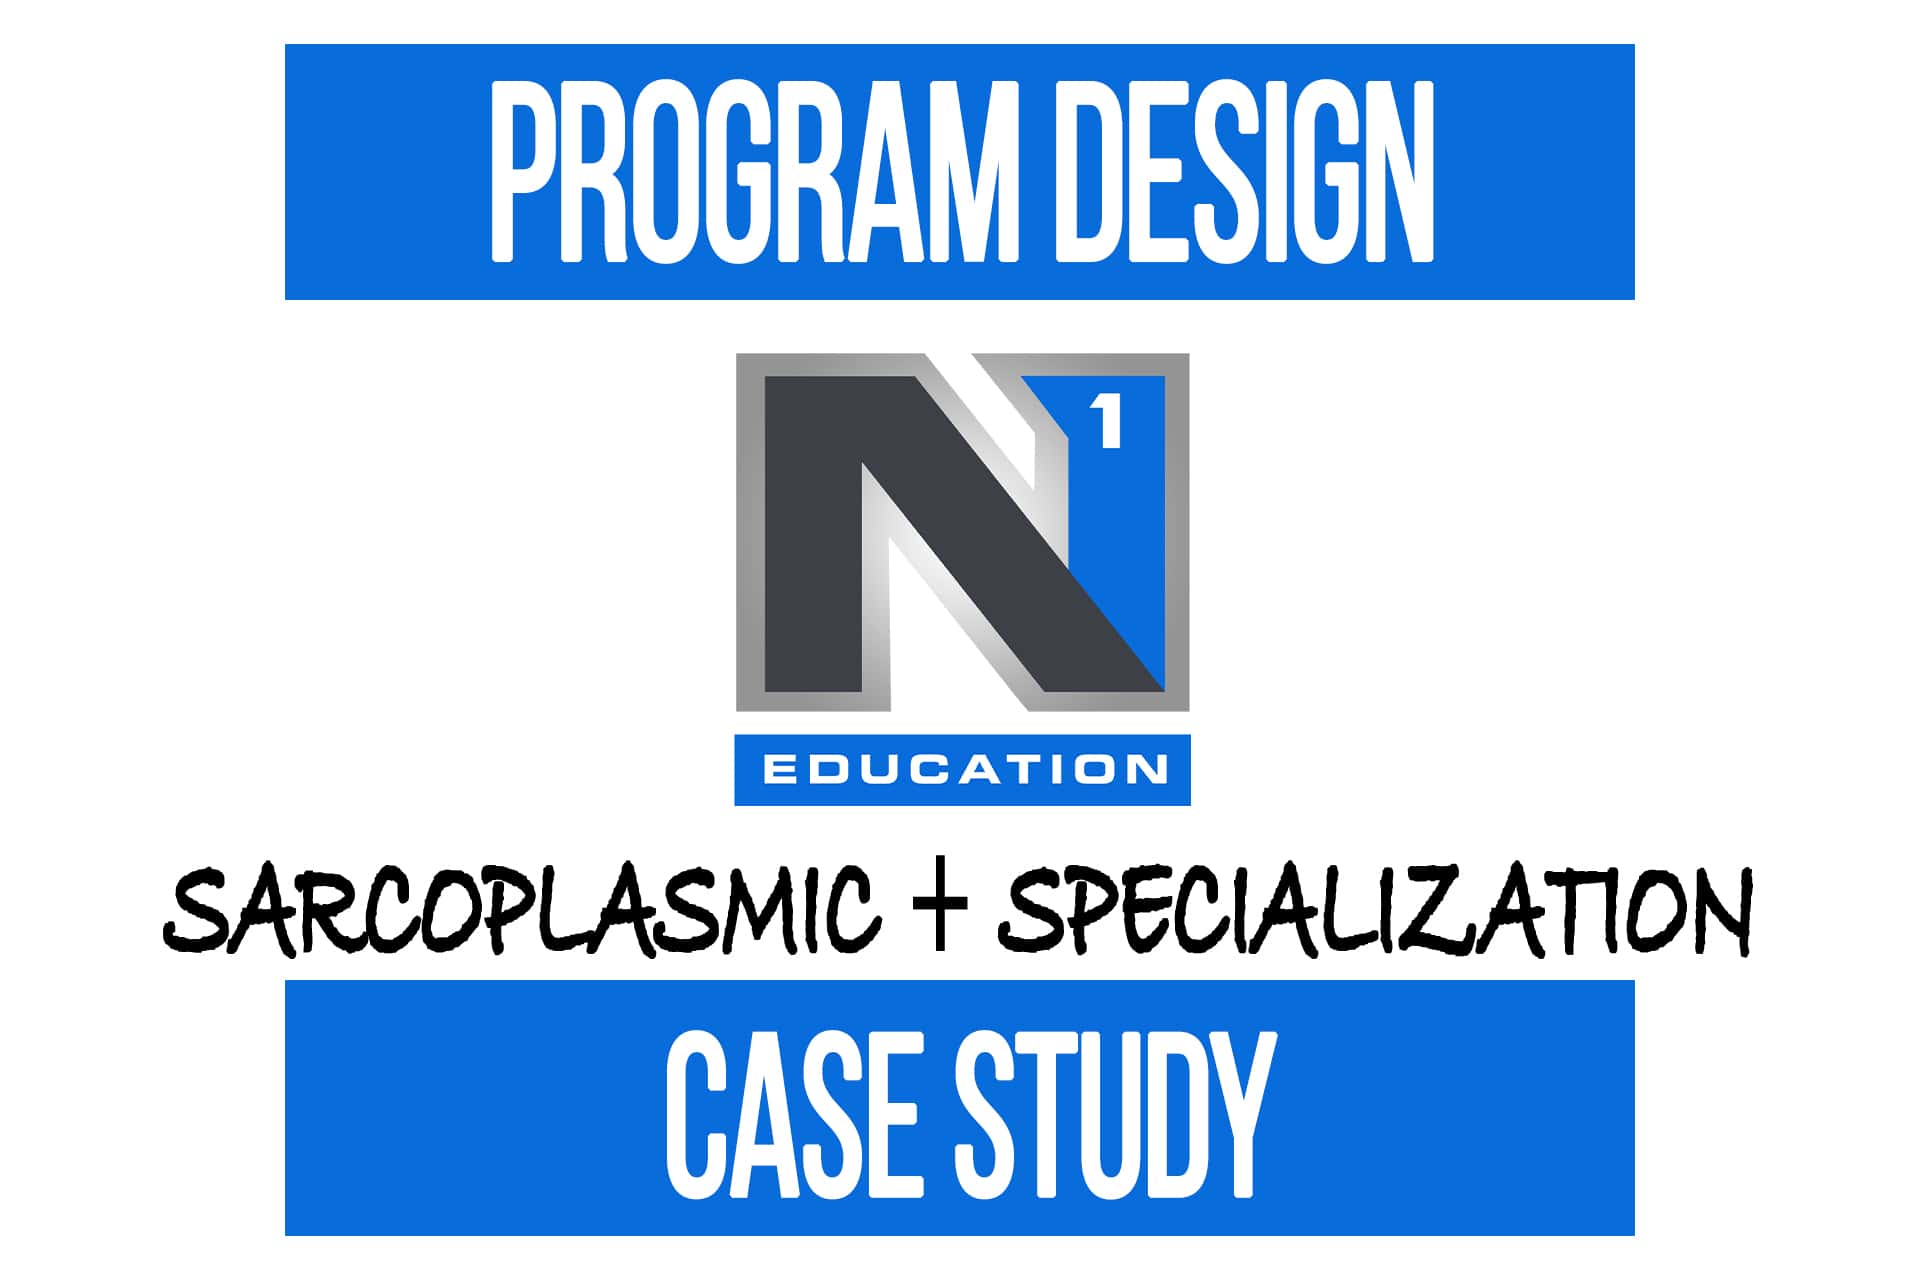 Program Design Case Study: Sarcoplasmic + Specialization